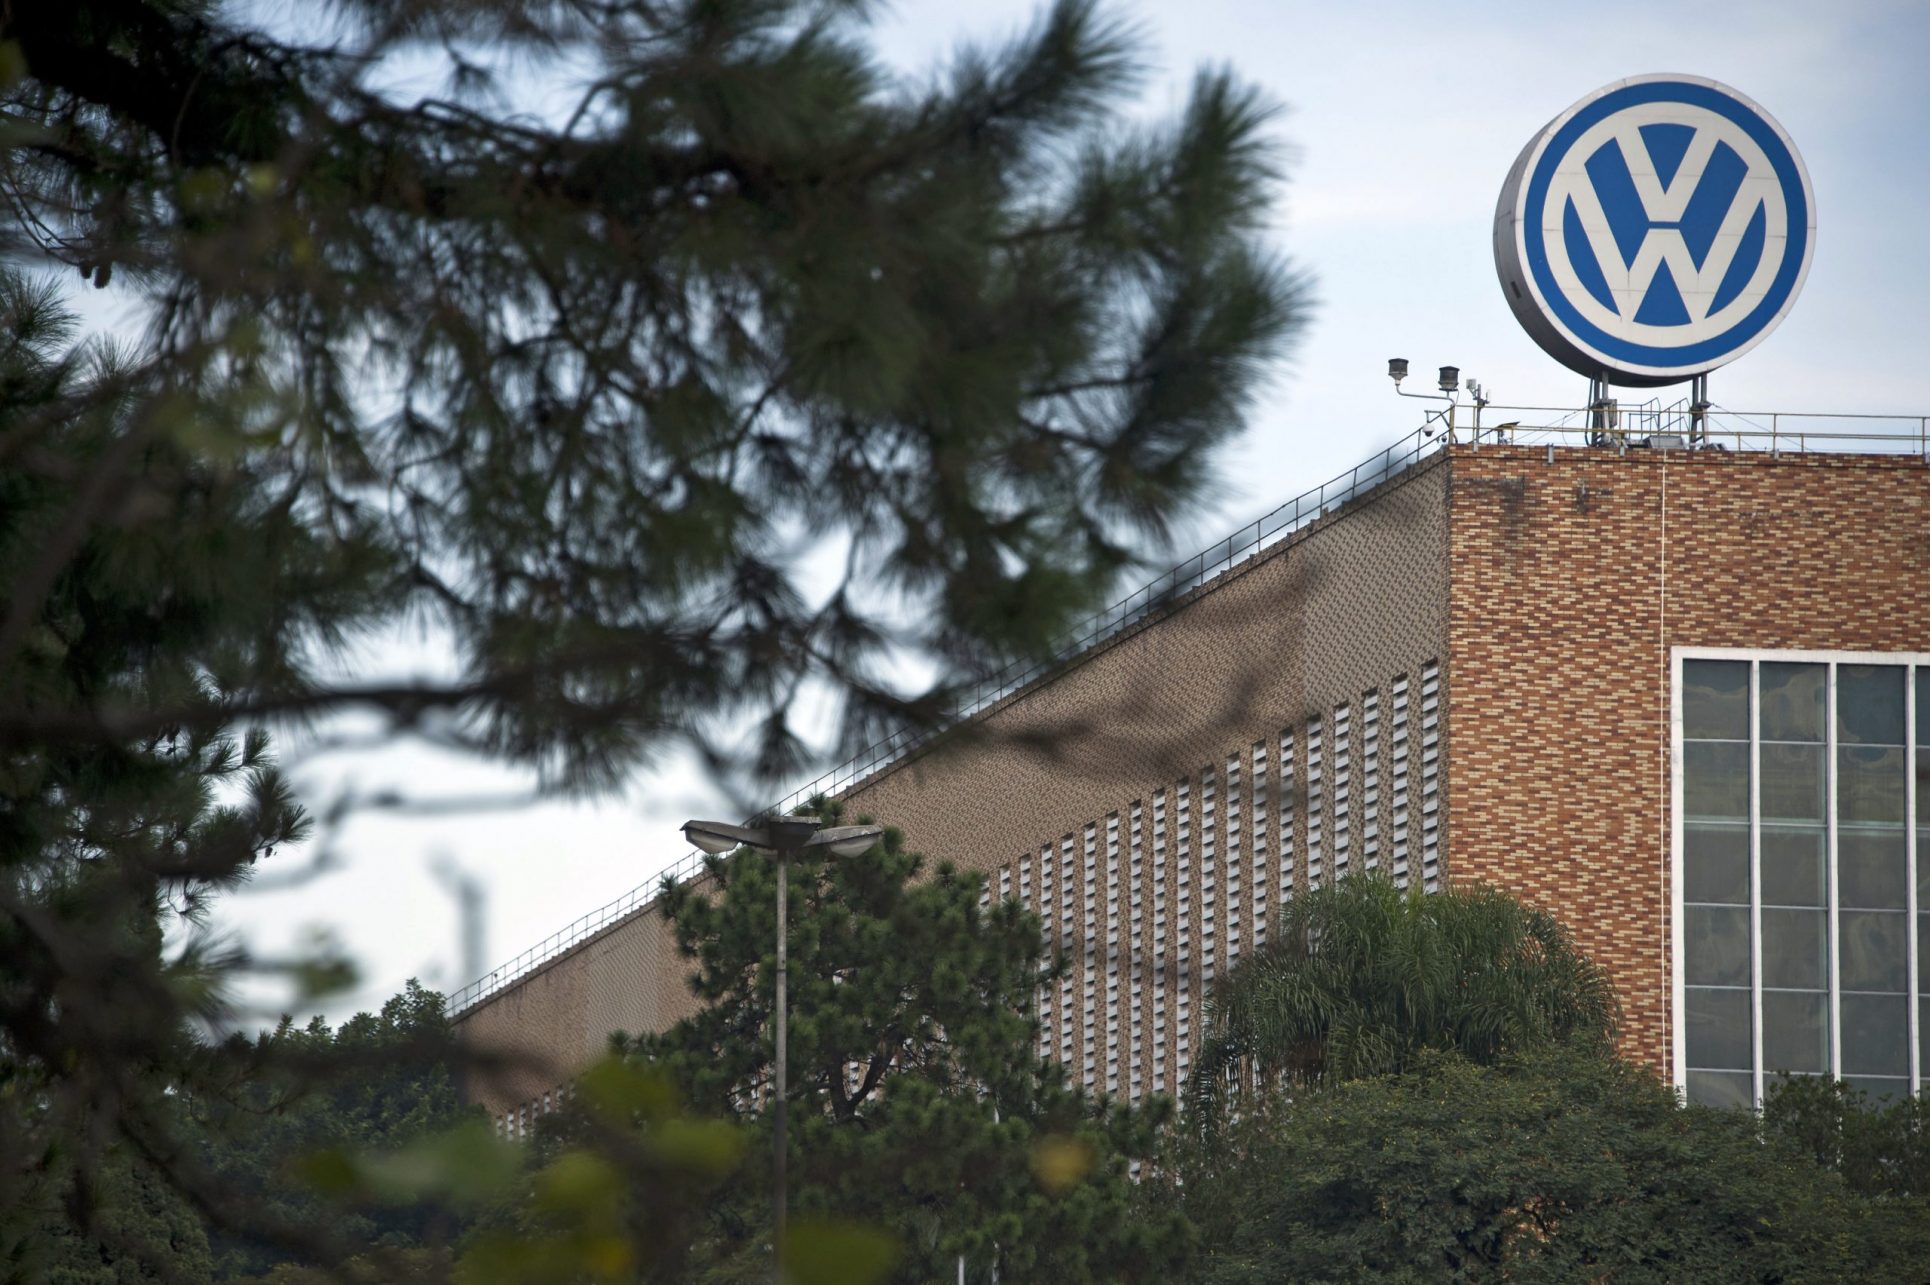 Acuerdo de Volkswagen con víctimas de la dictadura abre expectativas de justicia en Brasil